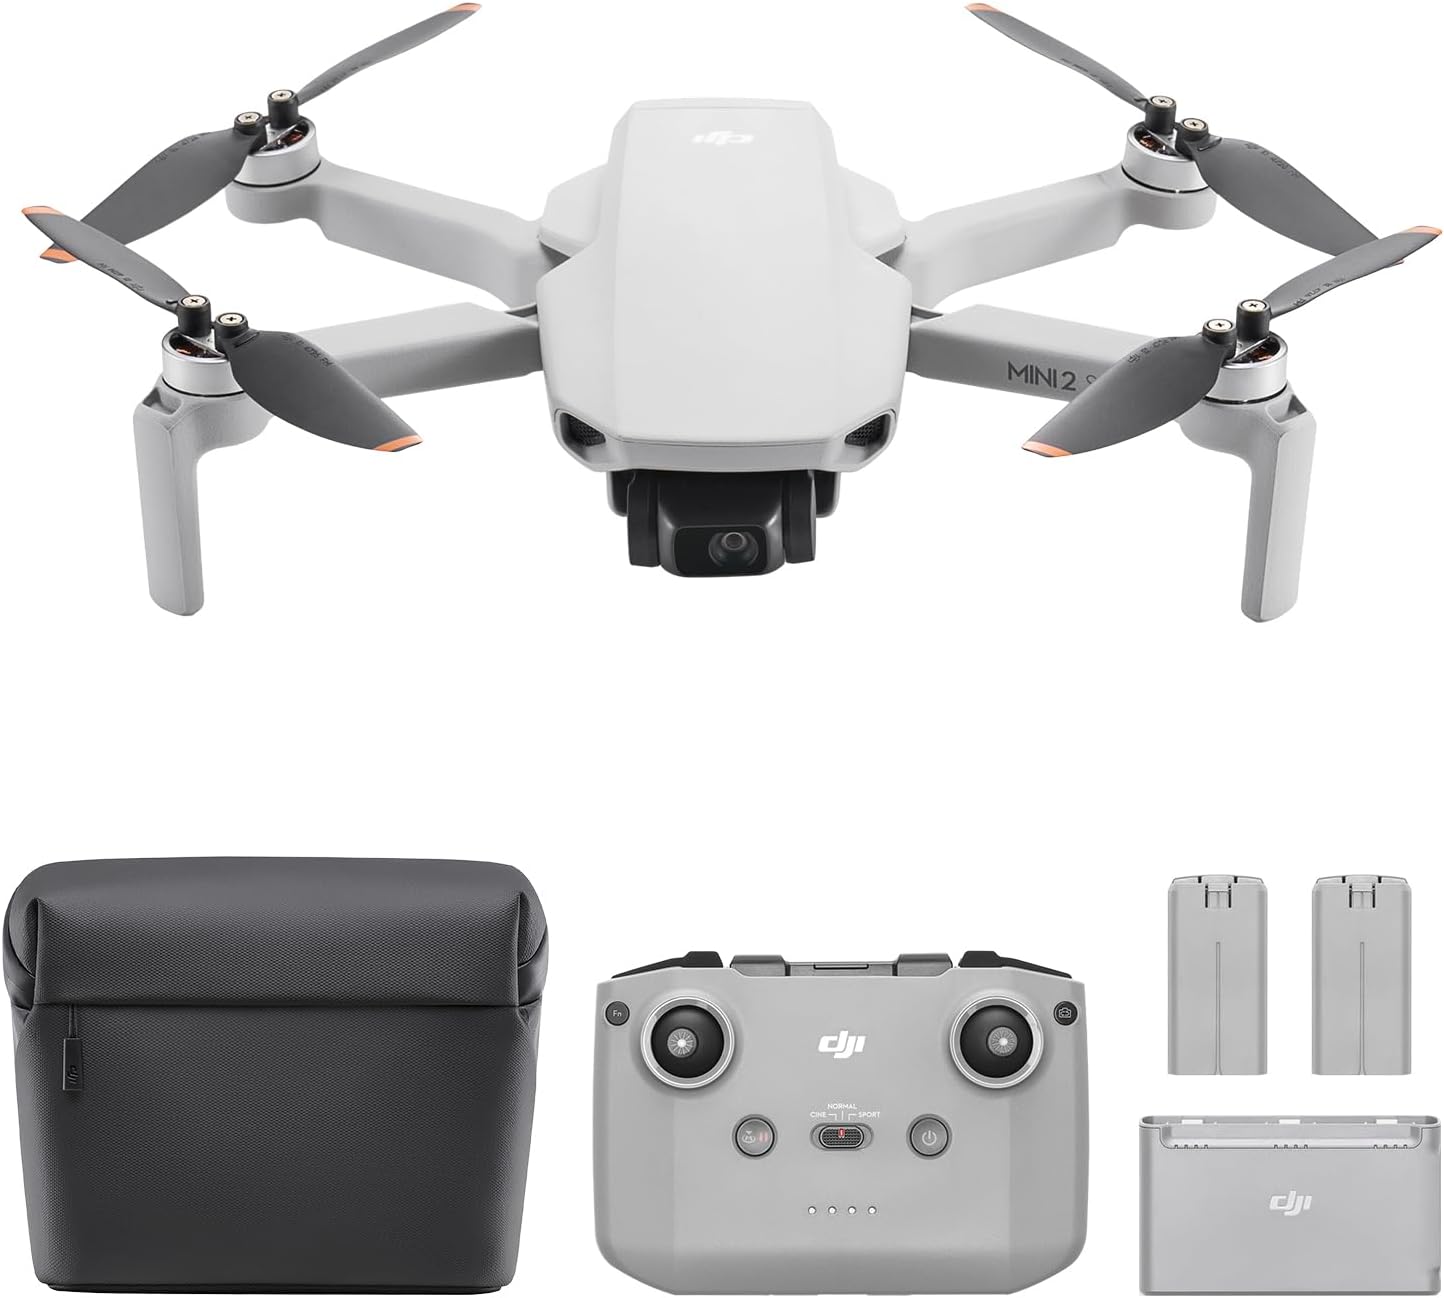 Pack DJI Mini 2 SE Vuela Más, dron mini con cámara ligero y plegable, vídeo 2.7K, modos inteligentes, transmisión de vídeo a 10 km, 31 min de vuelo, menos de 249 g, fácil de usar, baterías adicionales